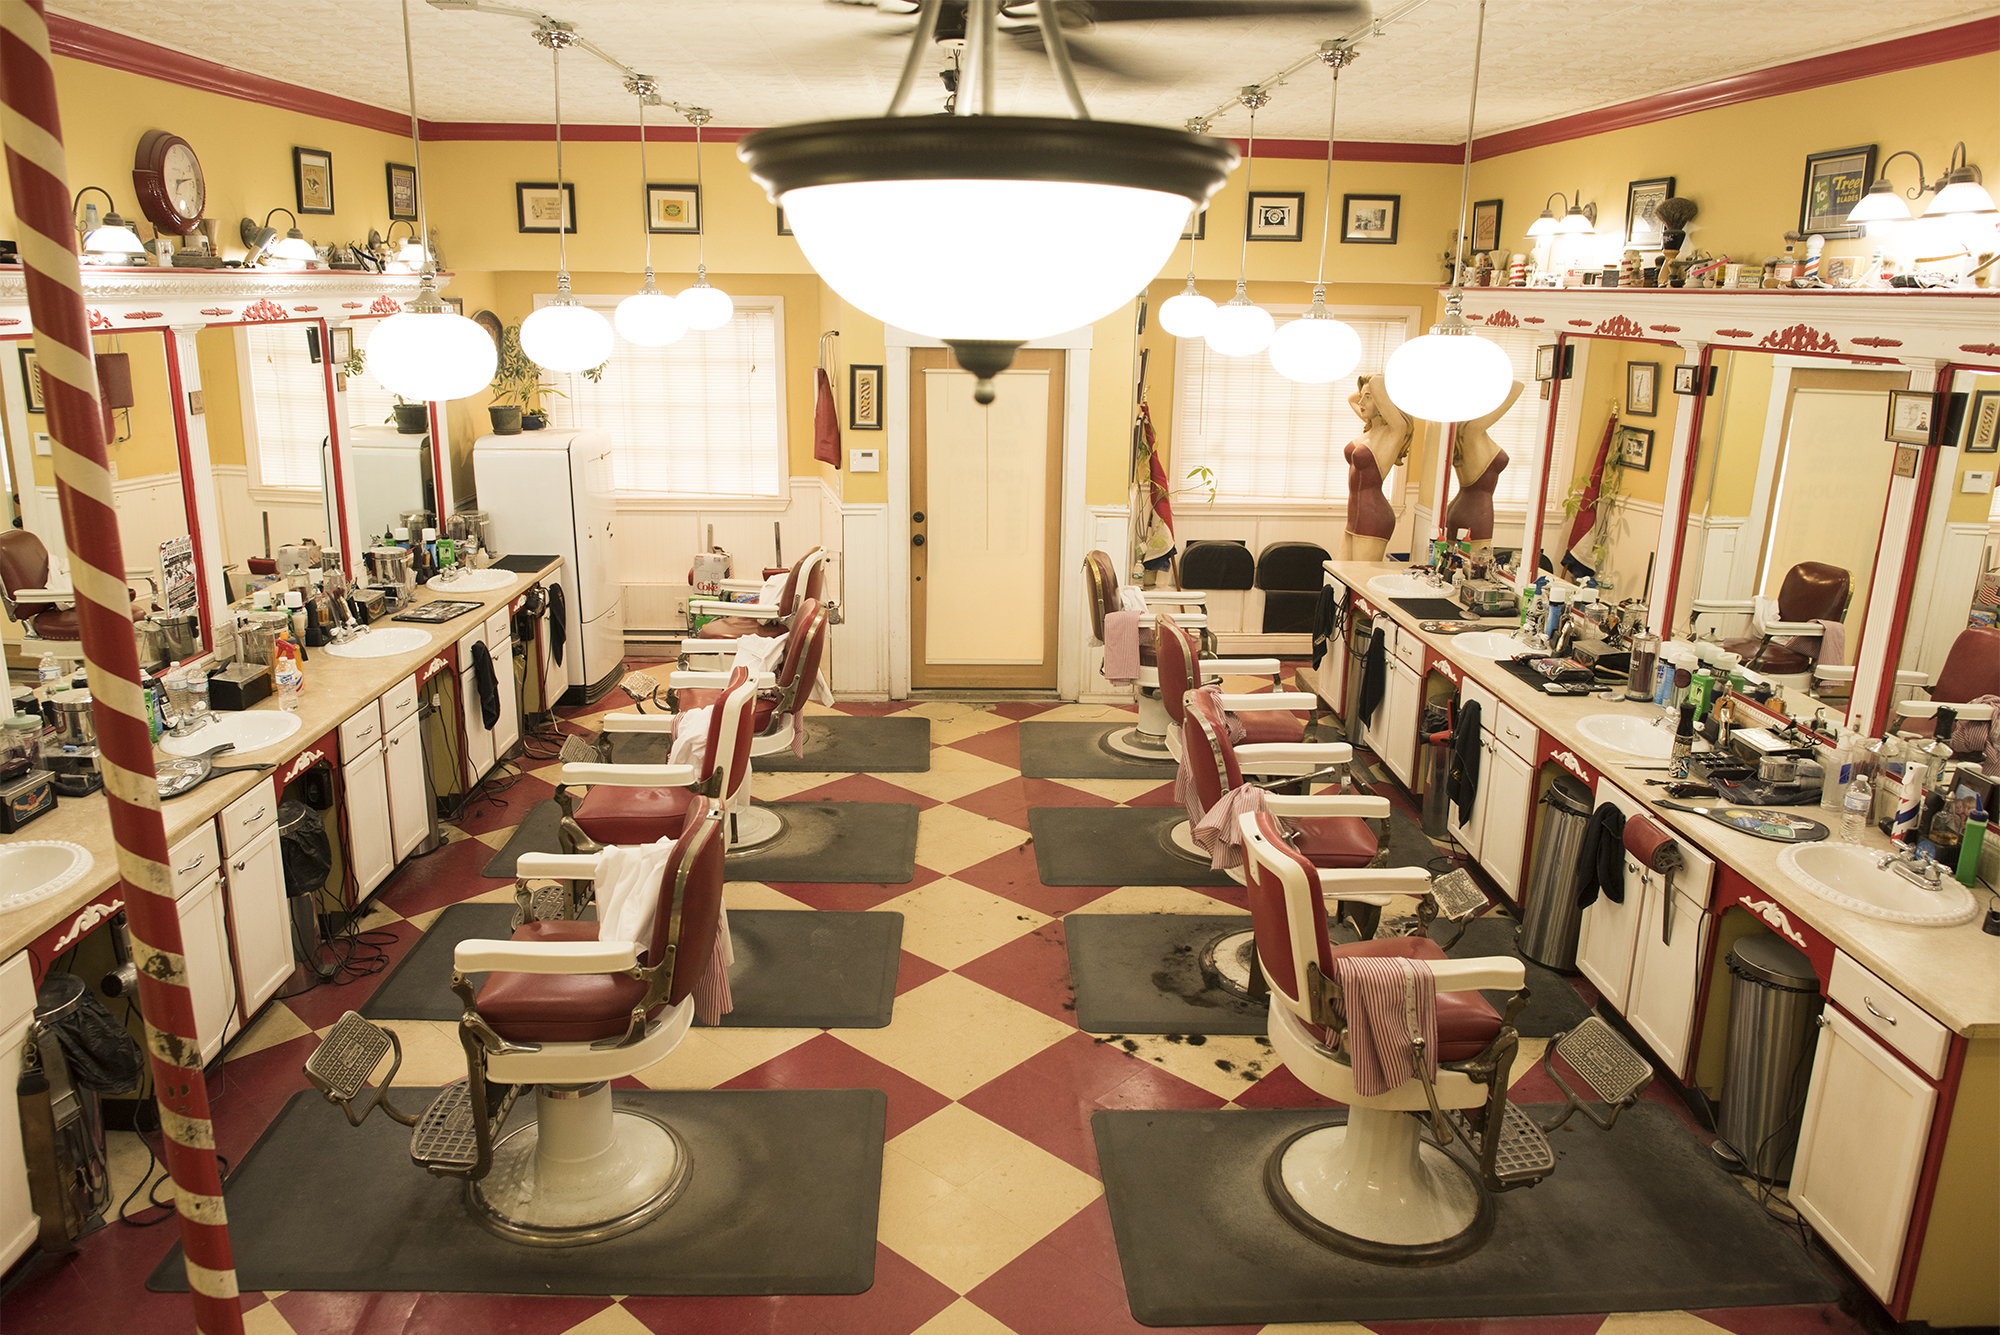 Downtown Las Vegas: Hi Rollers Barbershop  Barber shop decor, Barber shop, Barber  shop interior